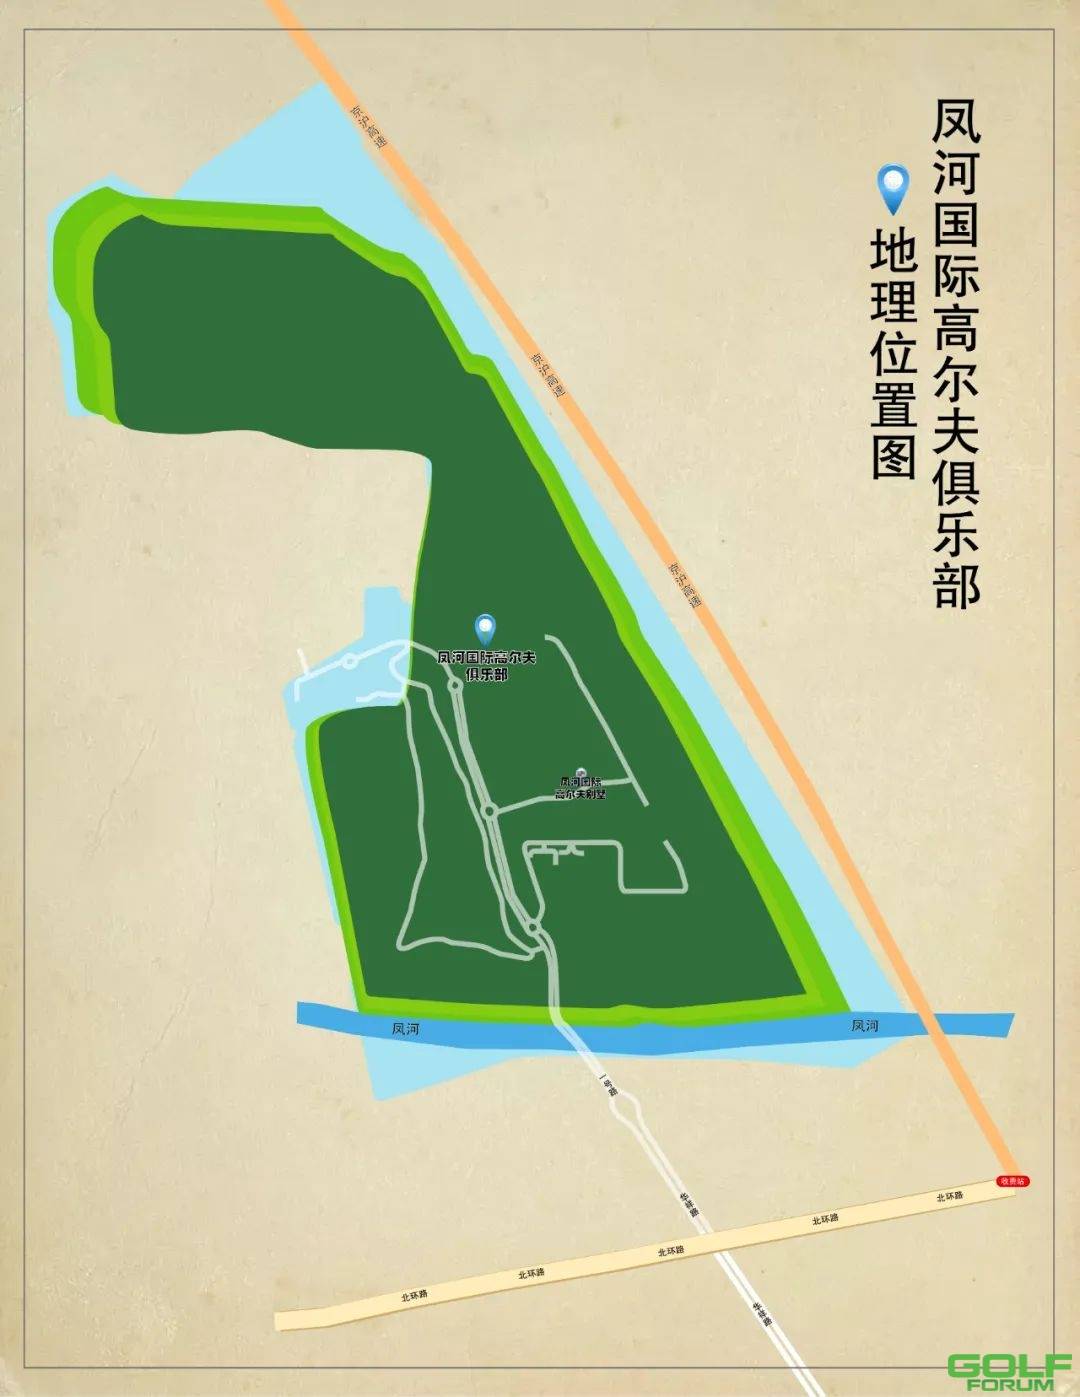 凤河国际高尔夫俱乐部丨导航位置